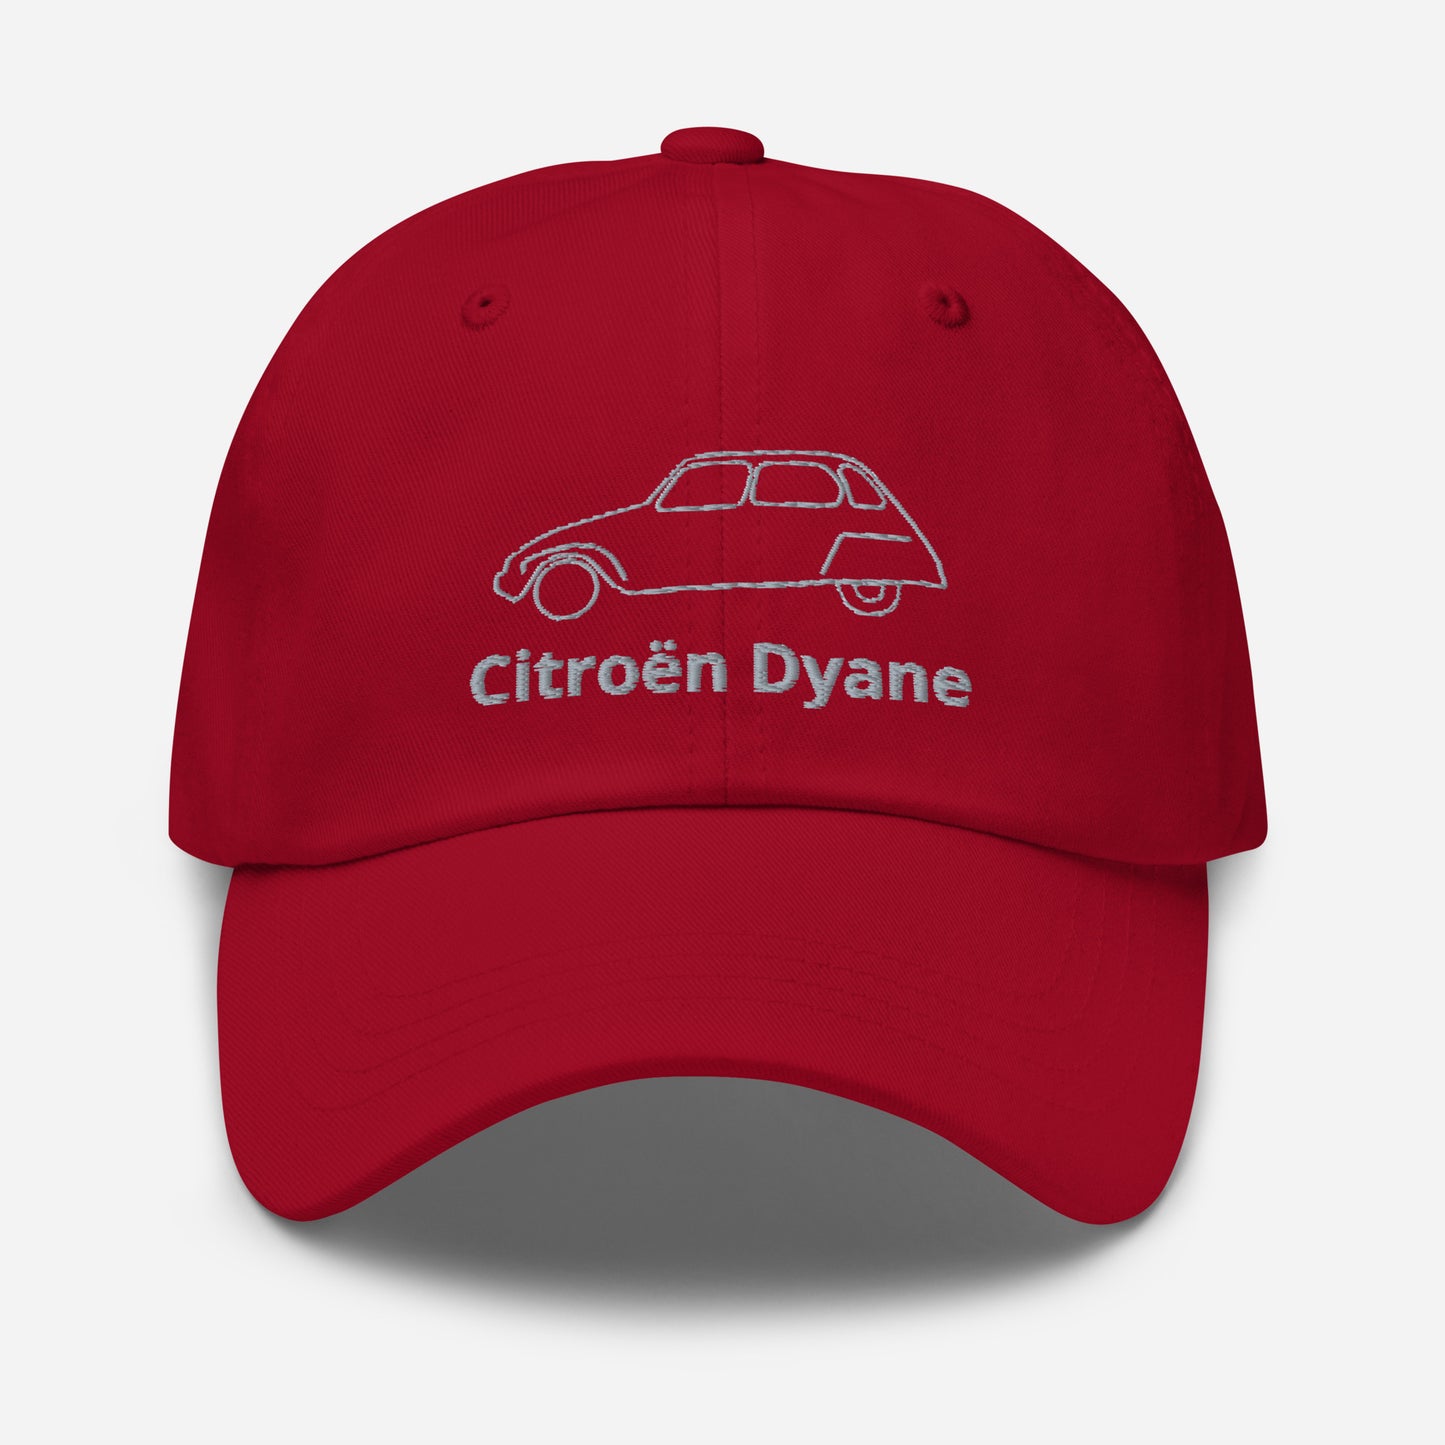 Dessin au trait casquette Citroën Dyane brodé - Noir, Marine, Rouge, Gris, L.Bleu ou Blanc